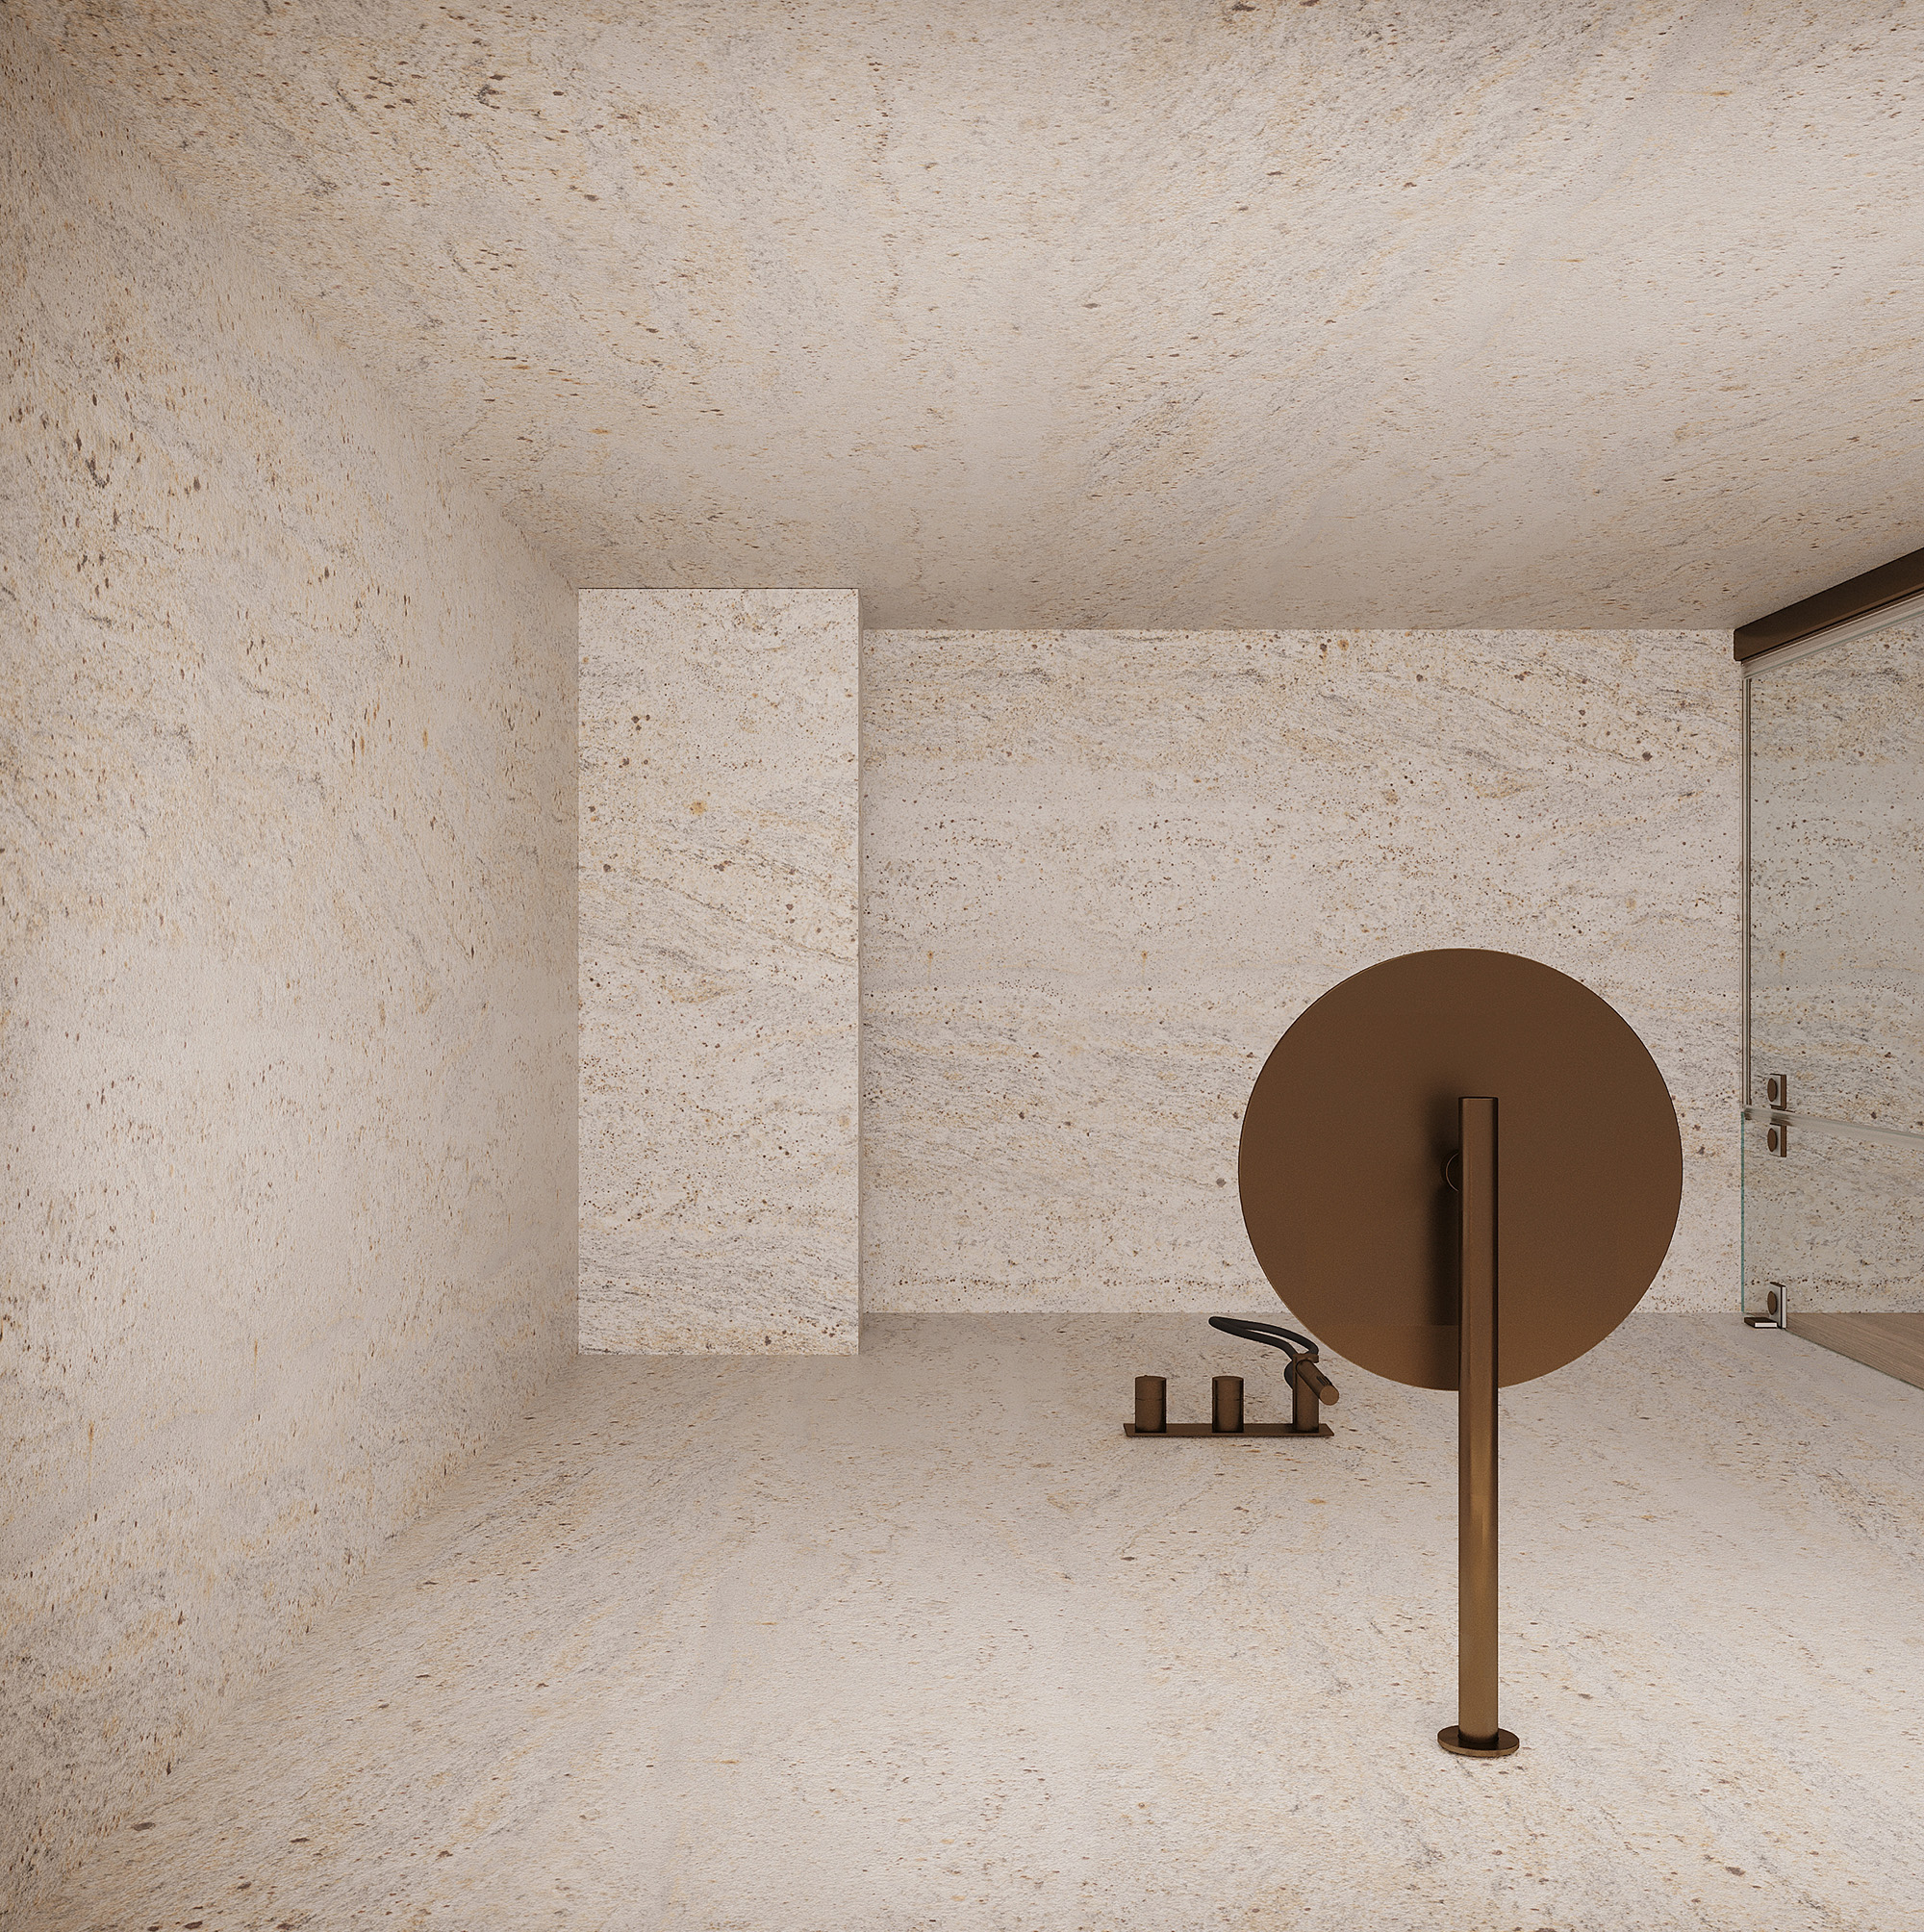 Дизайн-проект, концепция, современный загородный дом, ванная комната